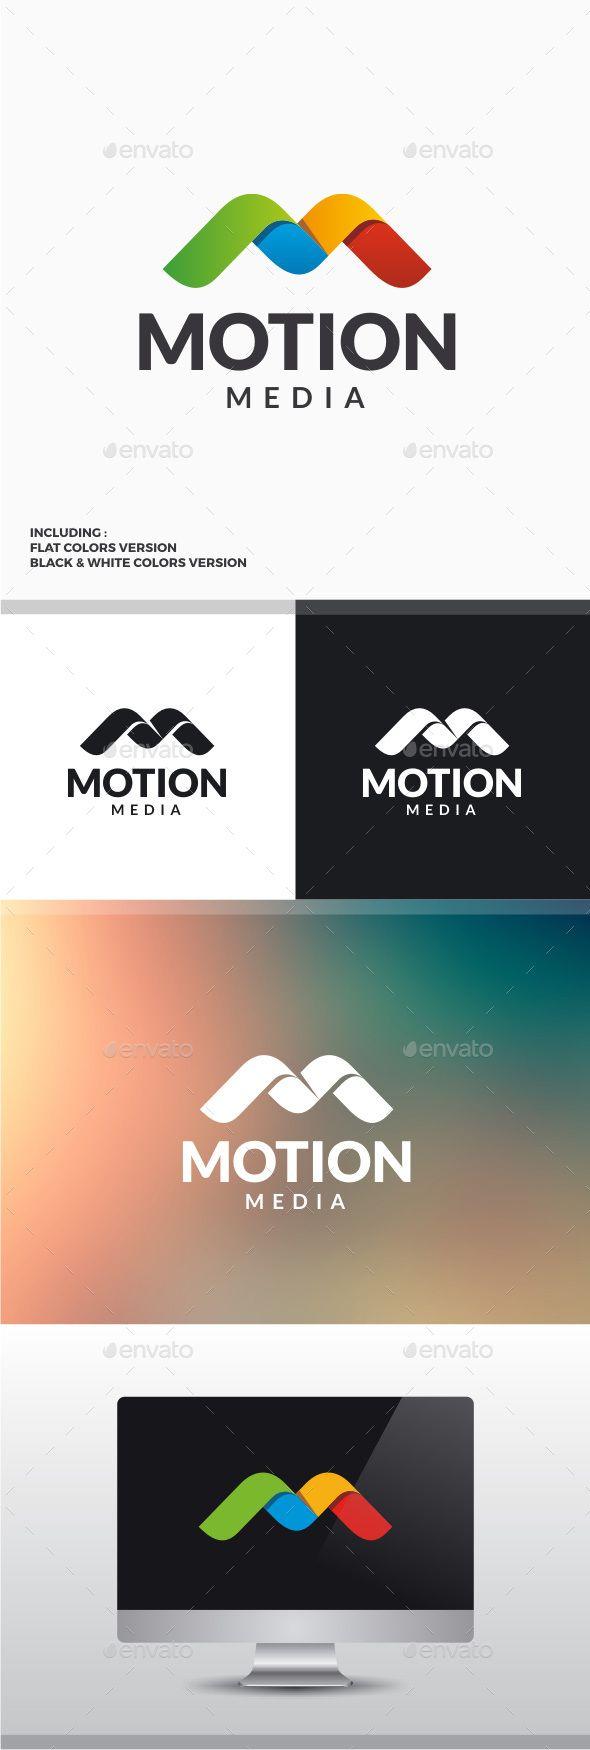 Motion M Logo - Motion Media - Letter M Logo | Letters | Pinterest | Logos ...